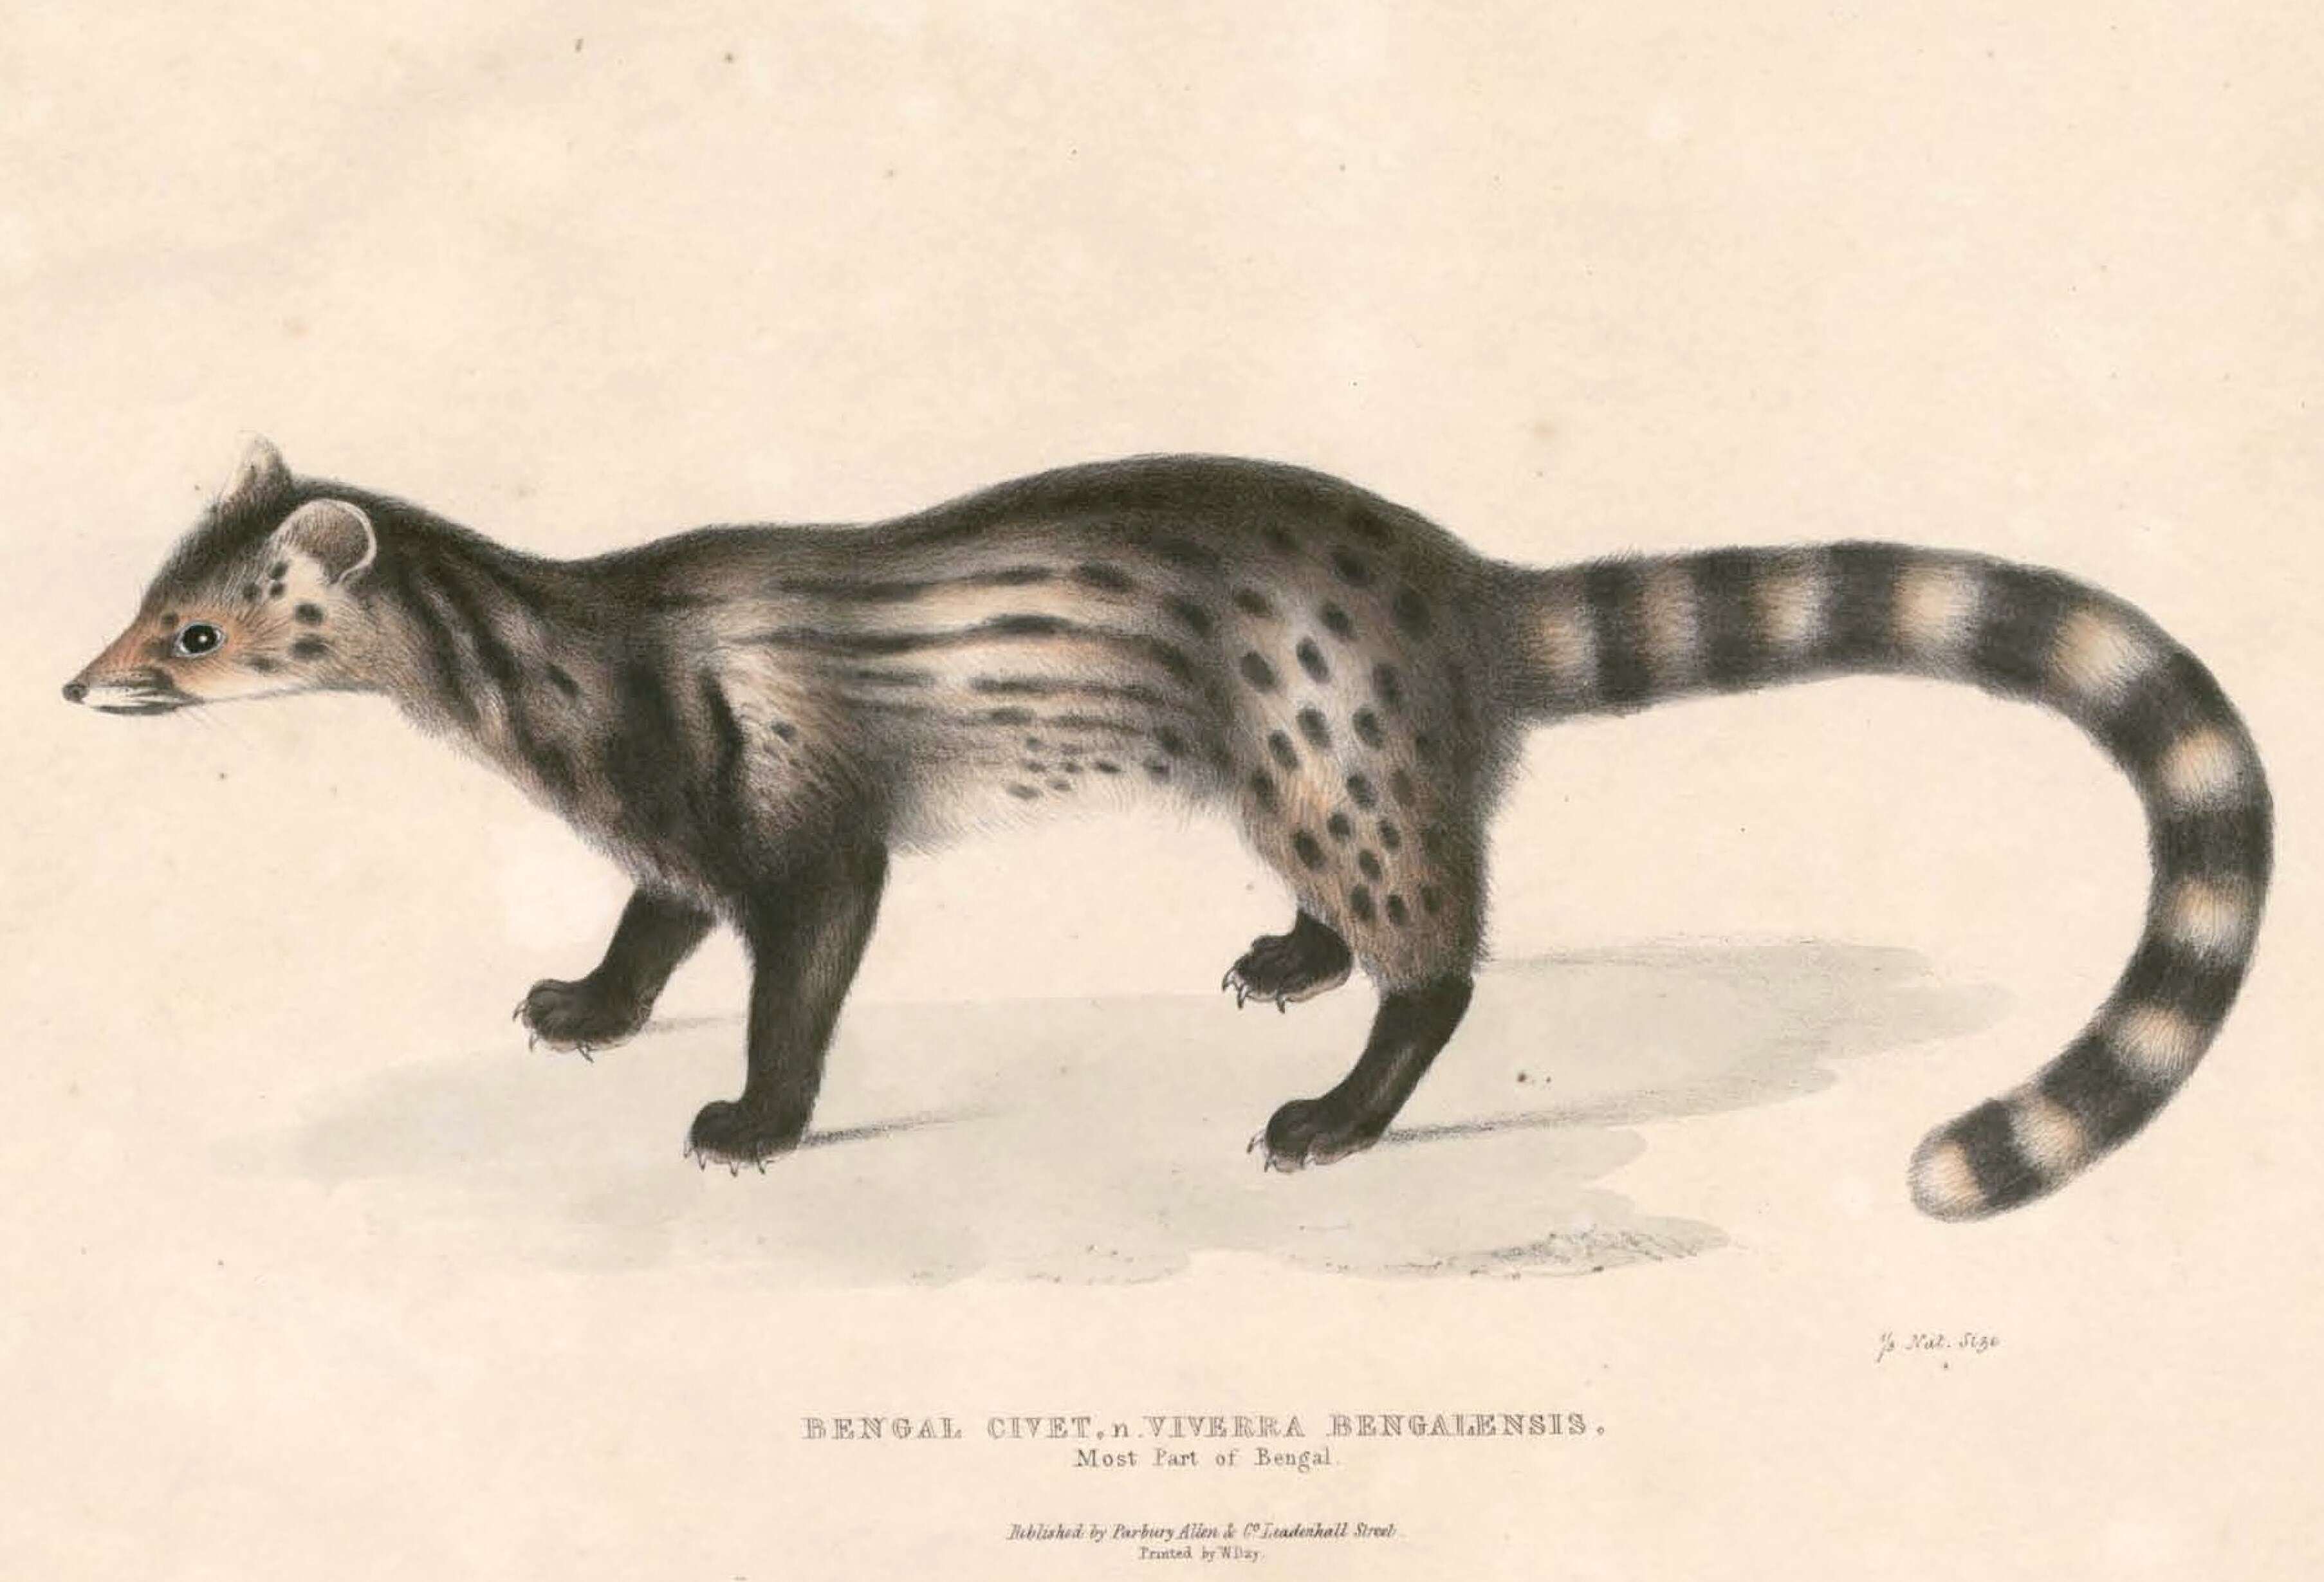 Image of Viverricula Hodgson 1838